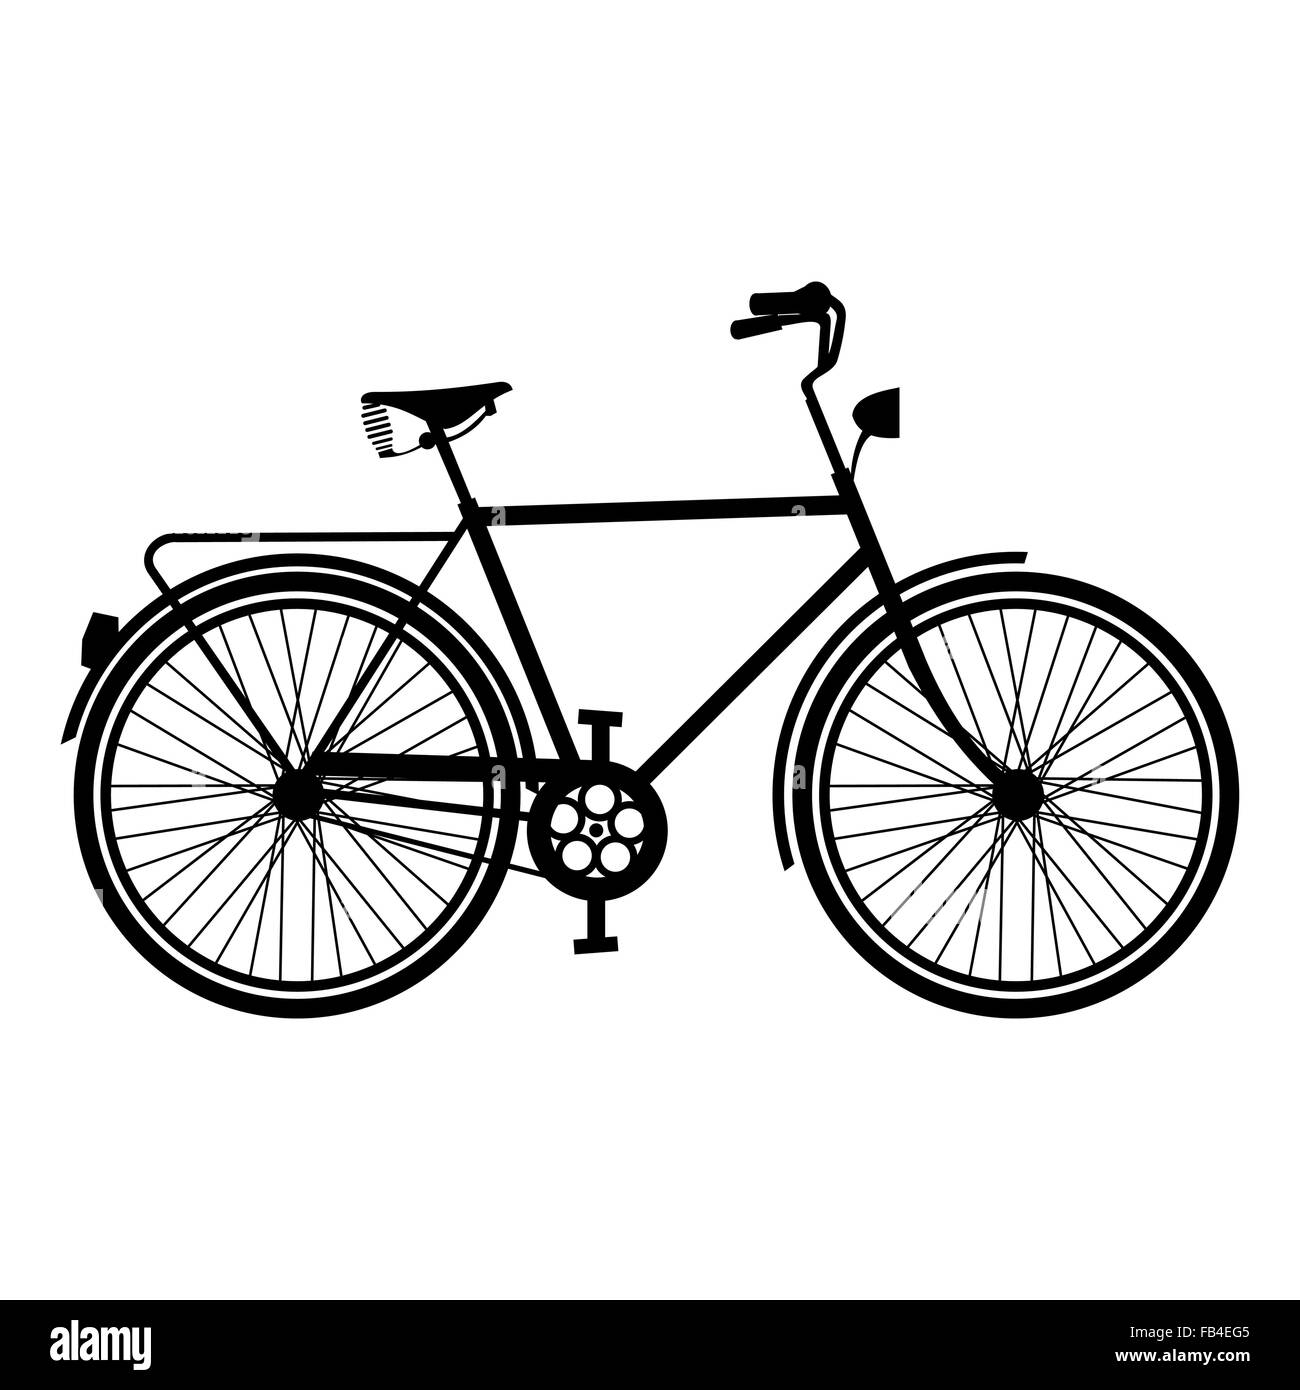 Контур старинного велосипеда